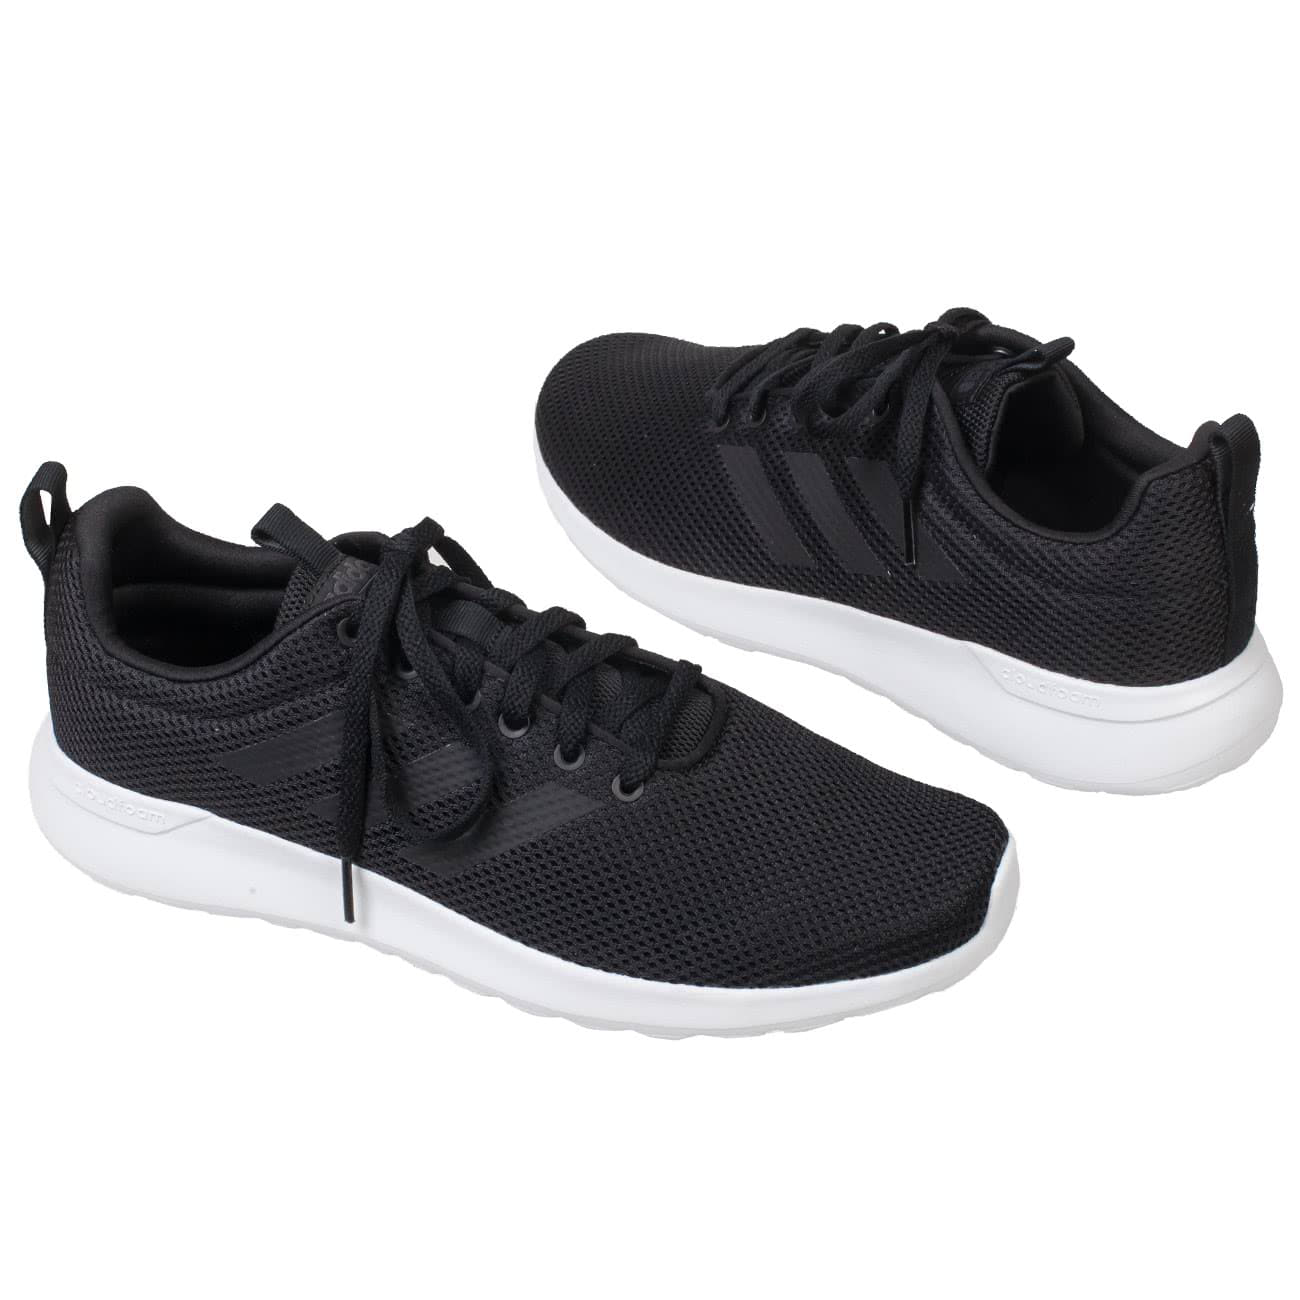 Облегченные мужские кроссовки Adidas черно-белые в сеточку купить в  интернет магазине Kwinto - товара нет в наличии